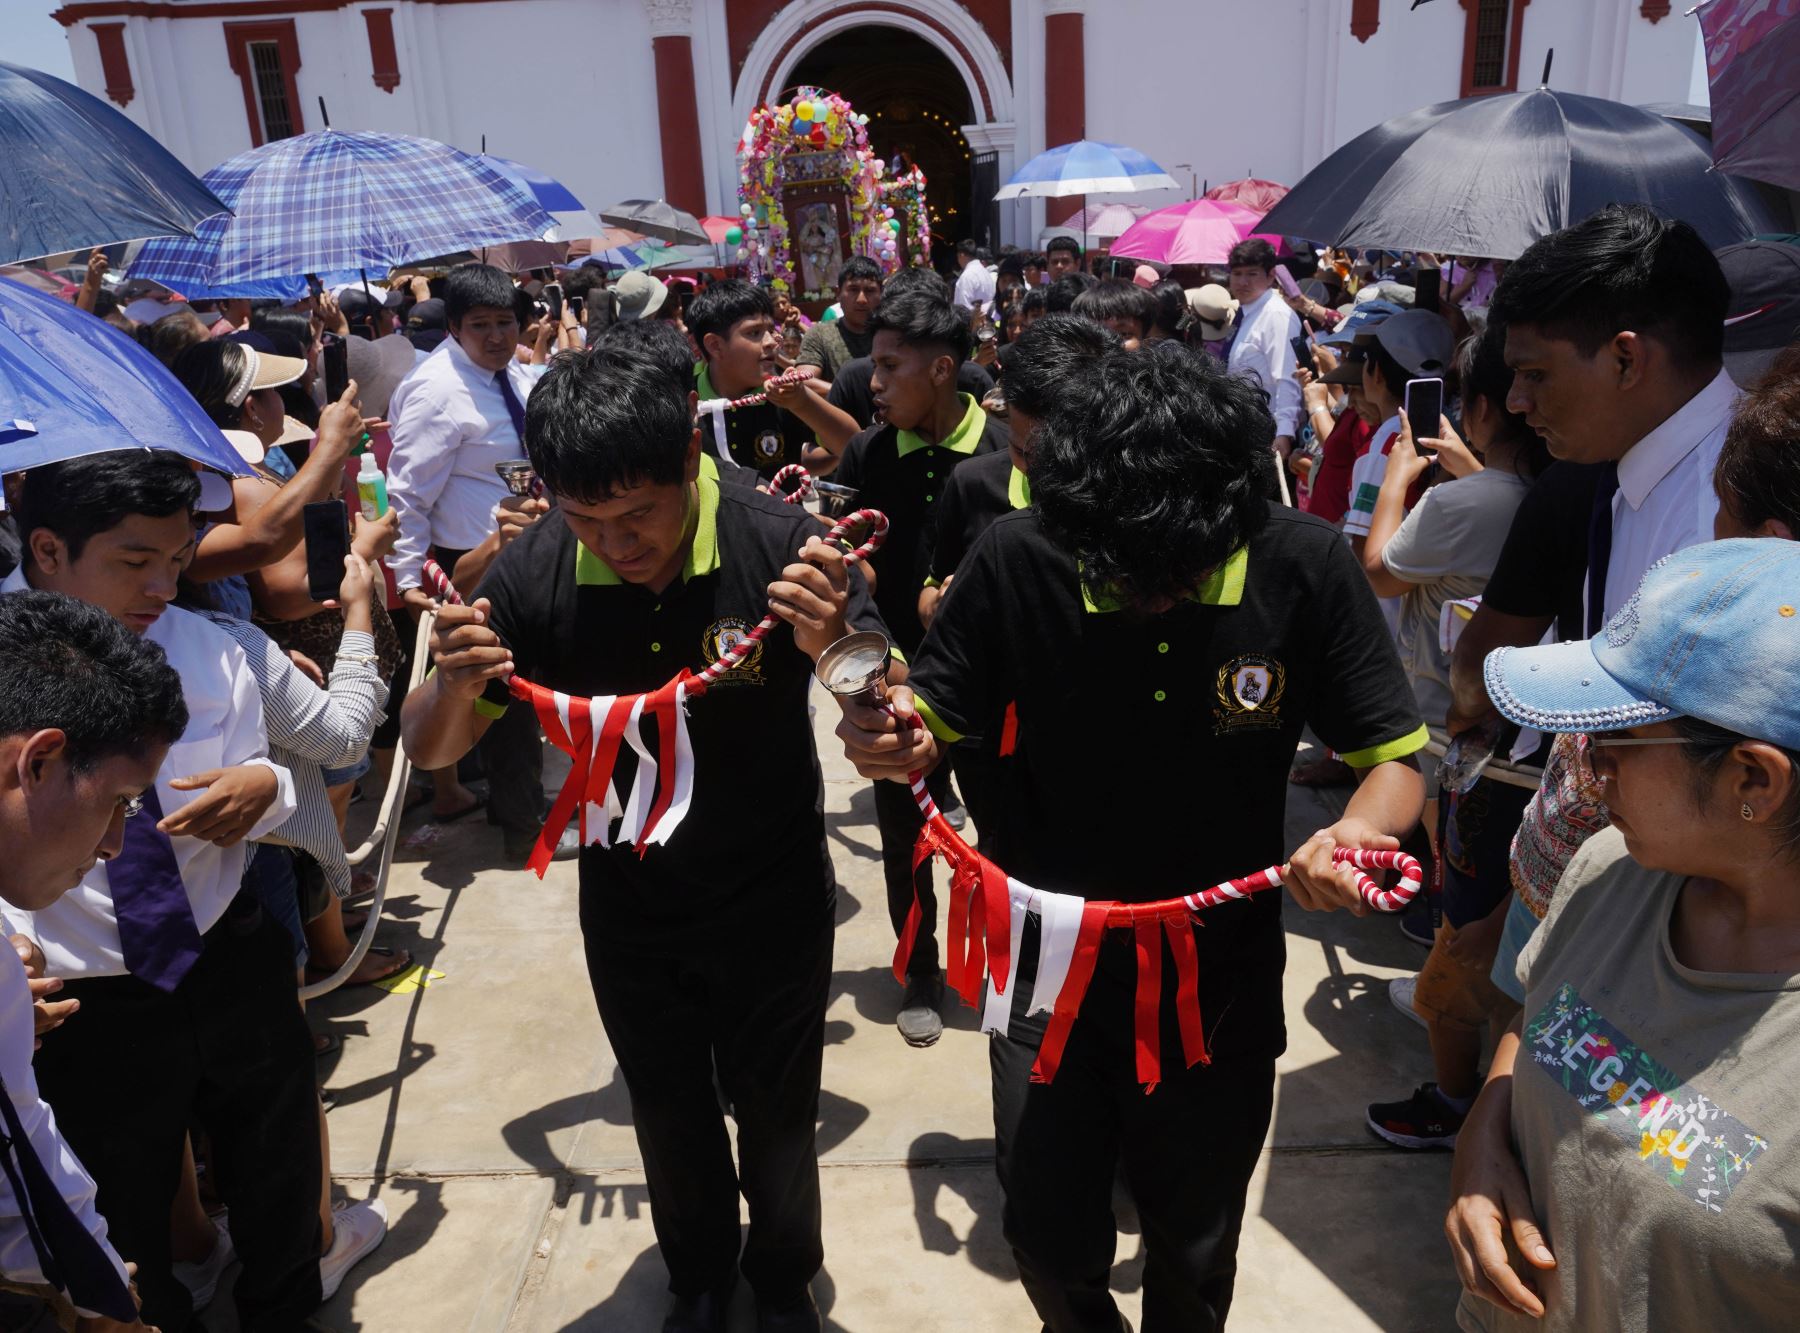 Devotos se congregaron en el Santuario de Nuestra Señora del Rosario de Yauca para celebrar el tradicional Jueves de Comadres, una fiesta llena de alegría, color y fervor religioso. Foto: Genry Bautista